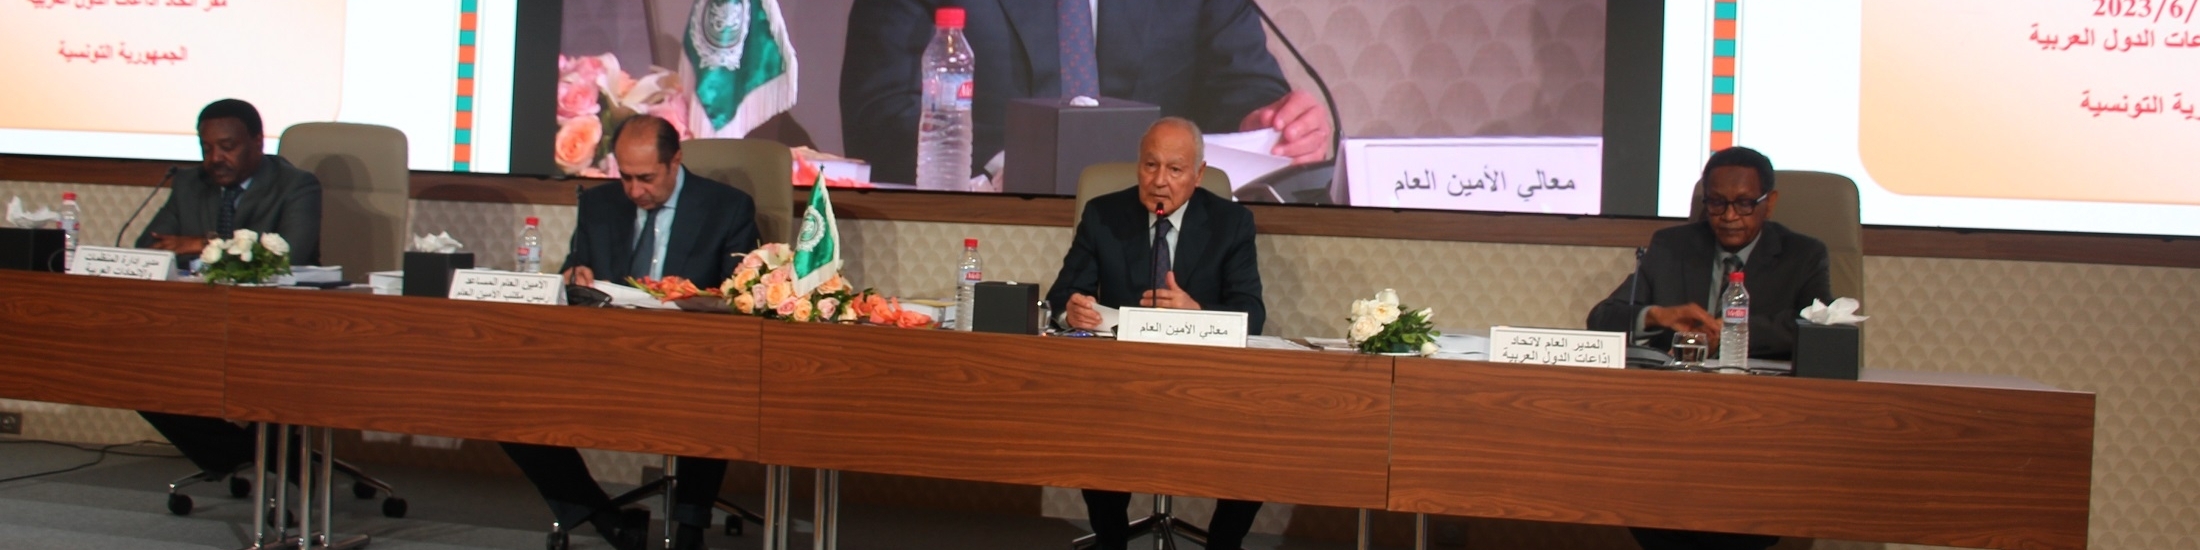 الاتحاد يستضيف الدورة 55 للجنة التنسيق العليا للعمل العربي المشترك باشراف الأمين العام لجامعة الدول العربية 